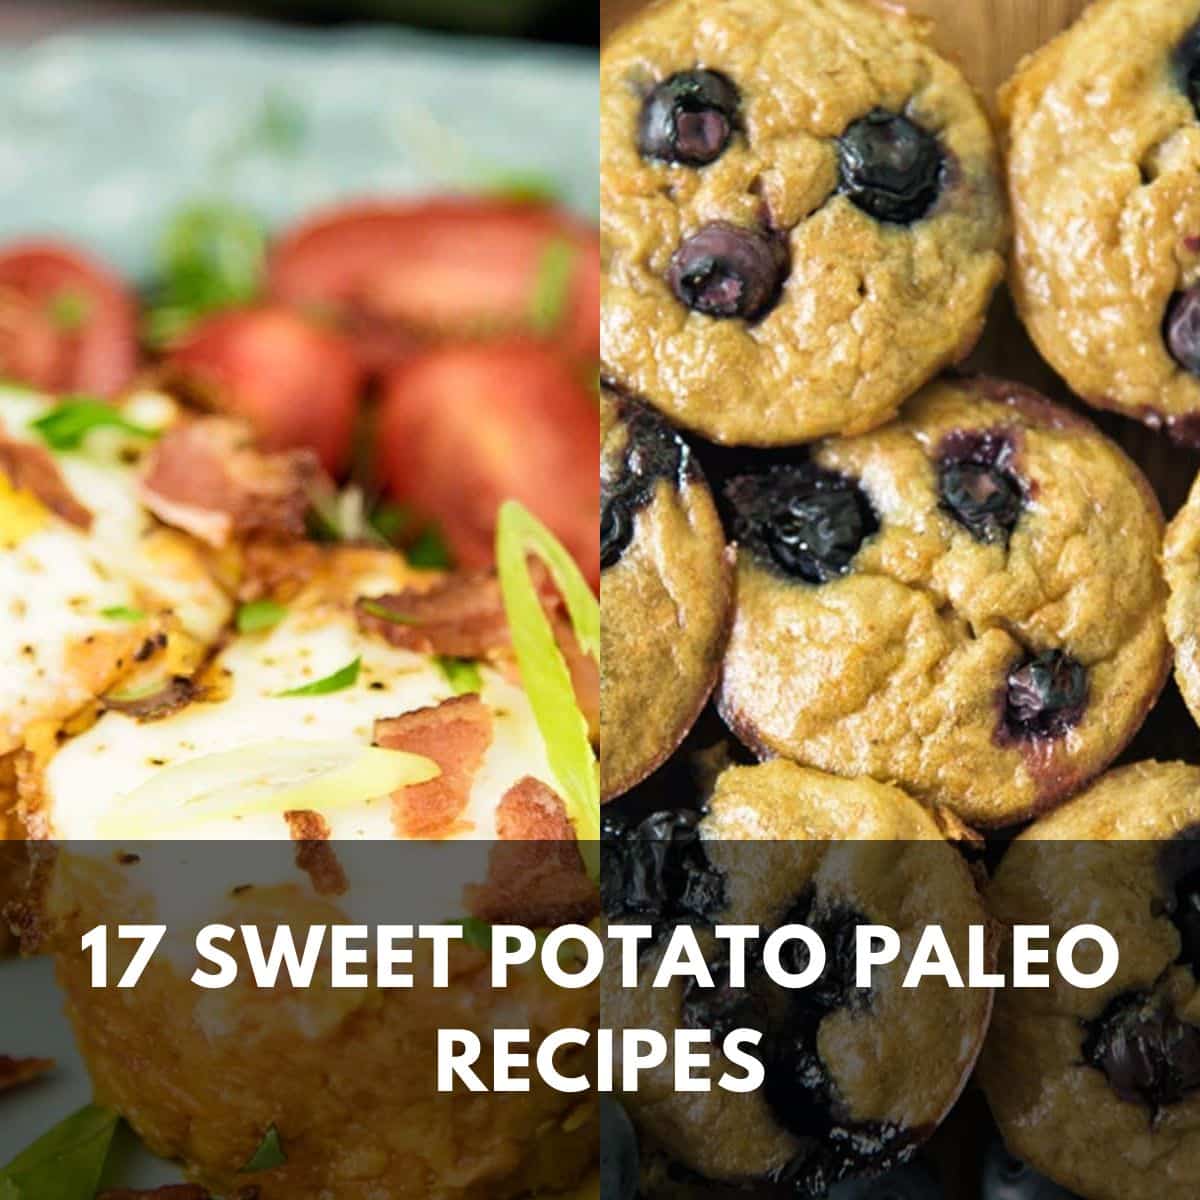 17 sweet potato paleo recipes main